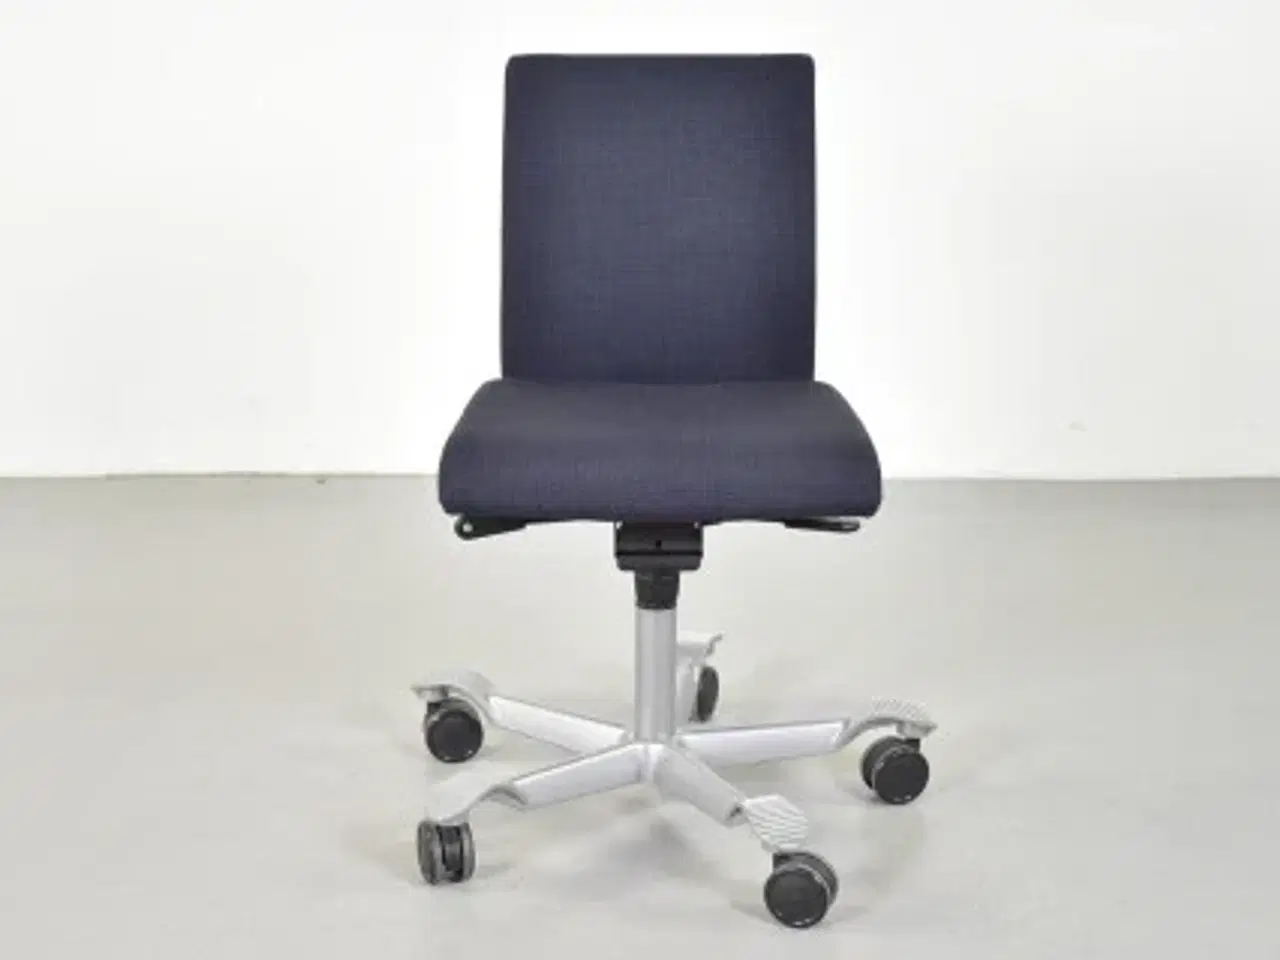 Billede 1 - Häg h04 credo 4200 kontorstol med sort/blå polster